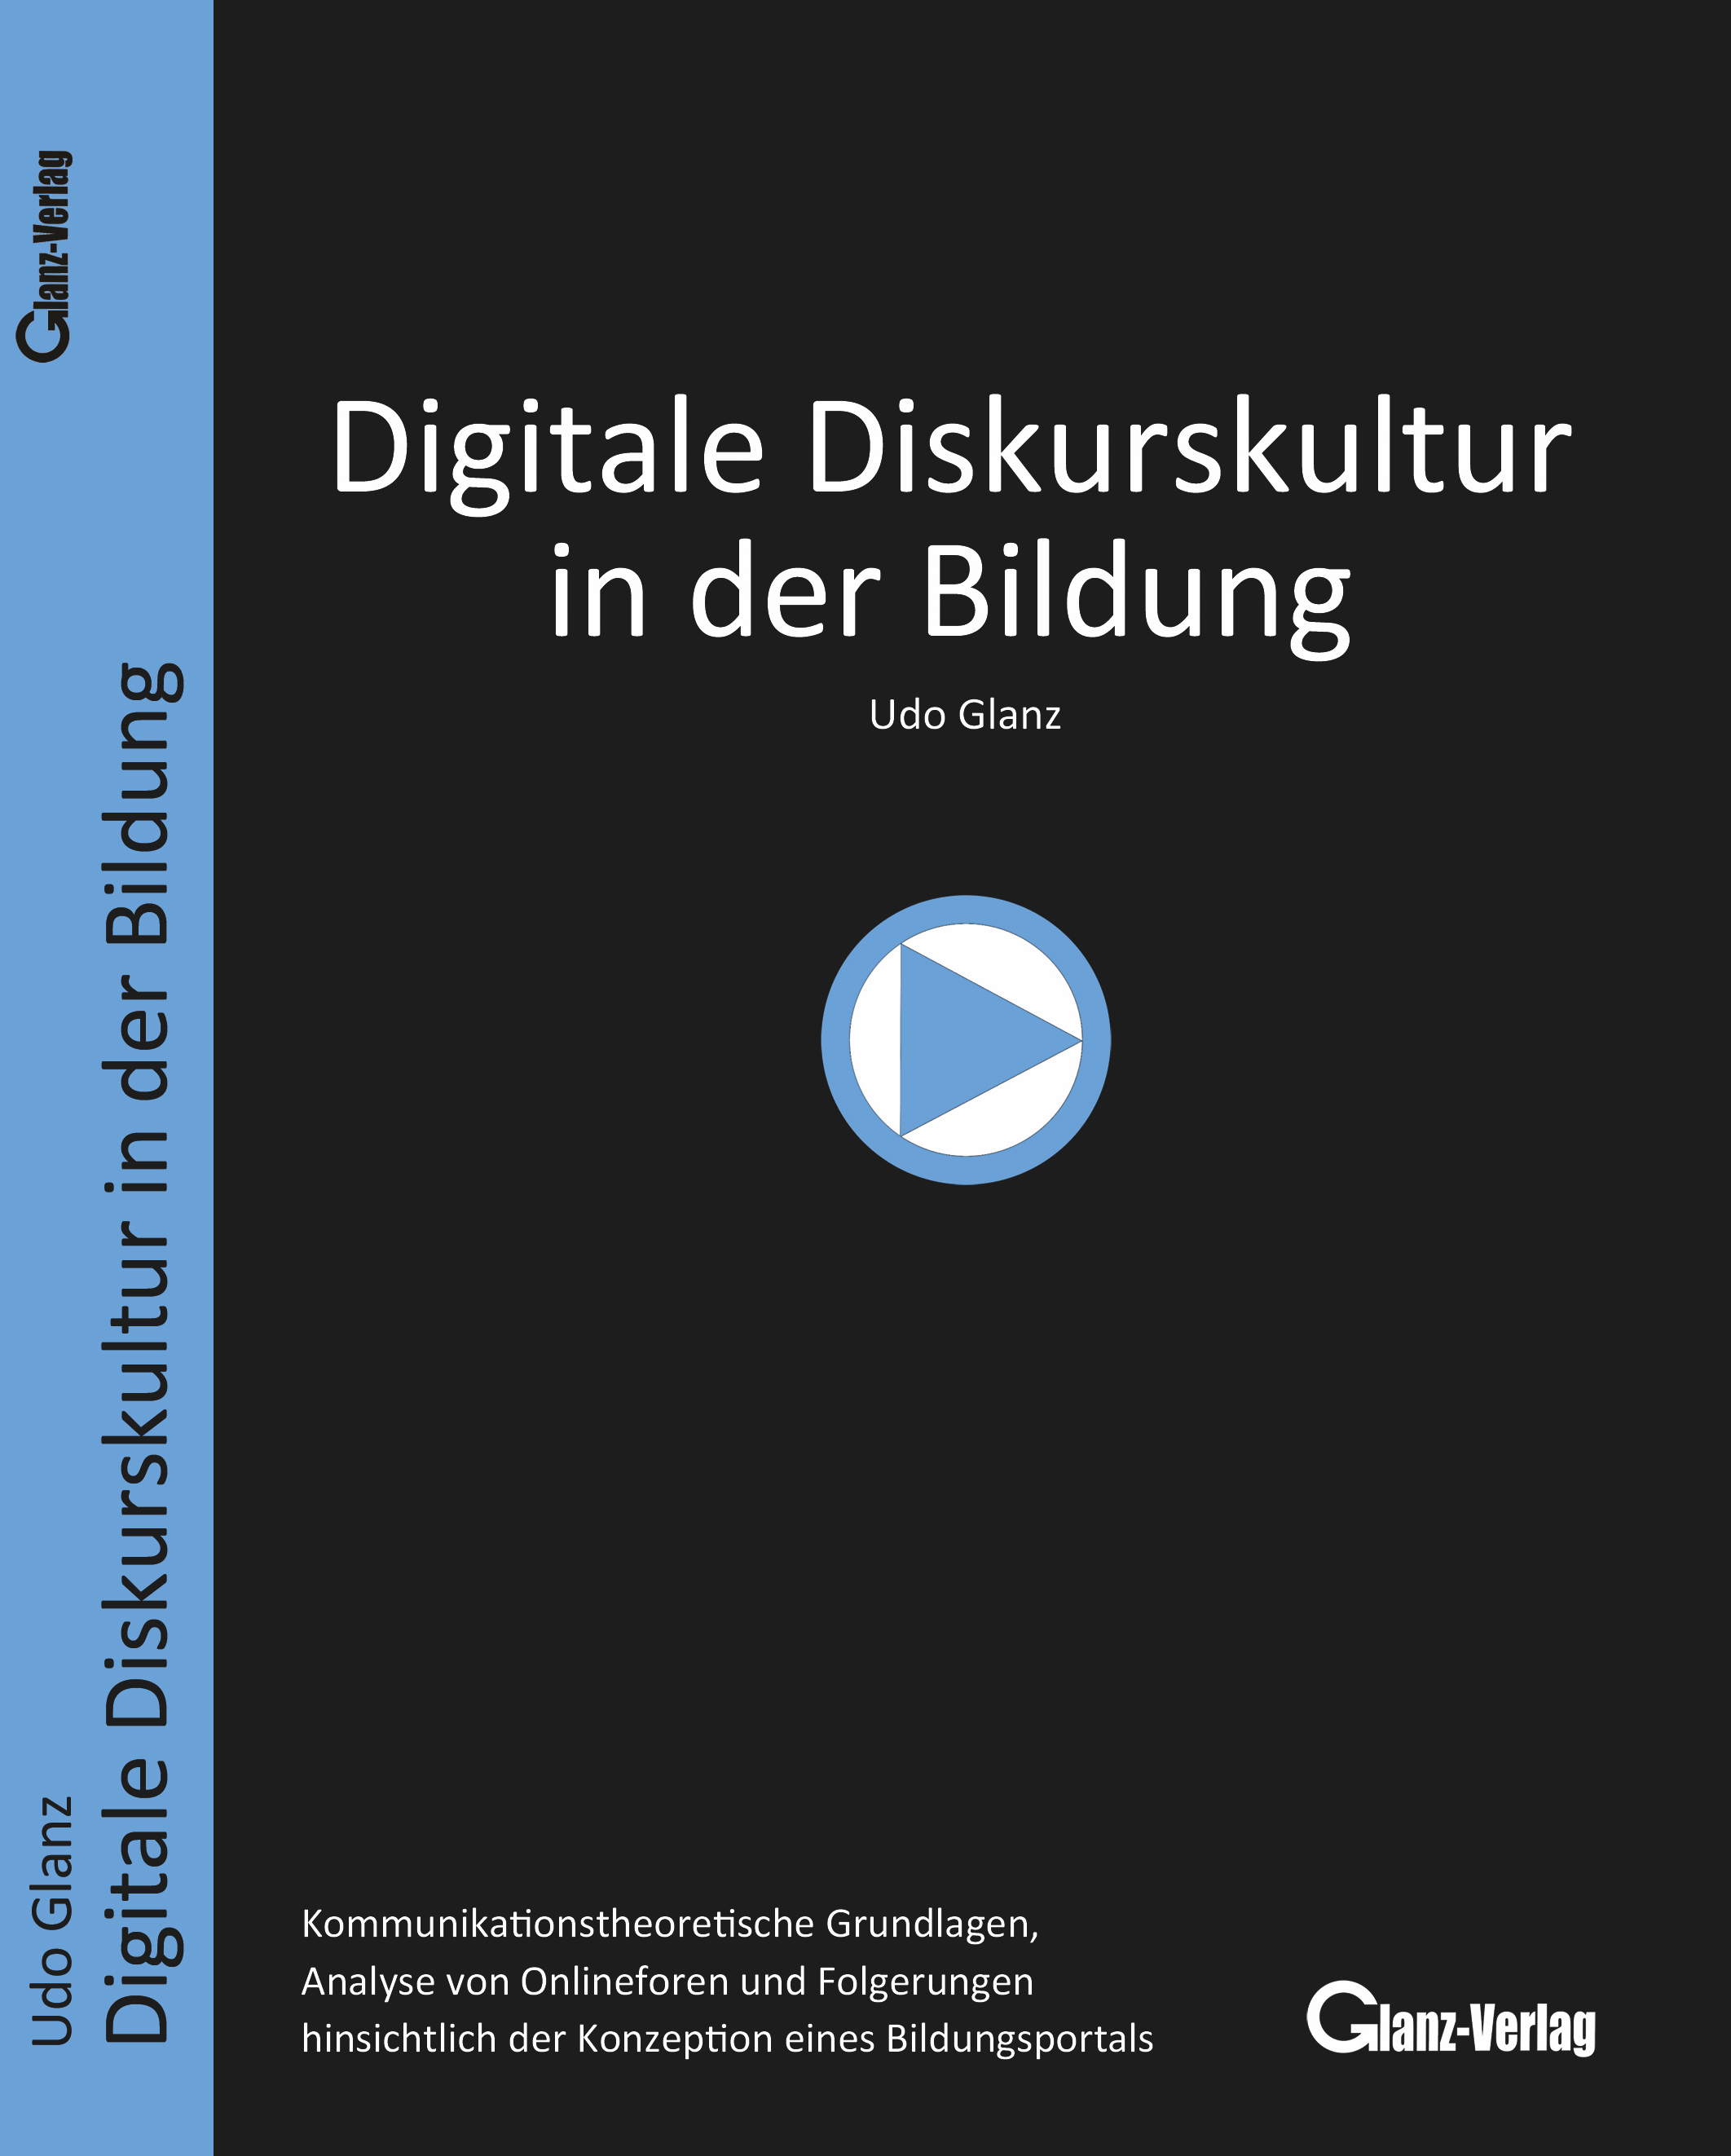 Glanz, Udo; Digitale Diskurskultur in der Bildung: Print bei Amazon, Buchhandel.de oder Deutsche Nationalbibliothek